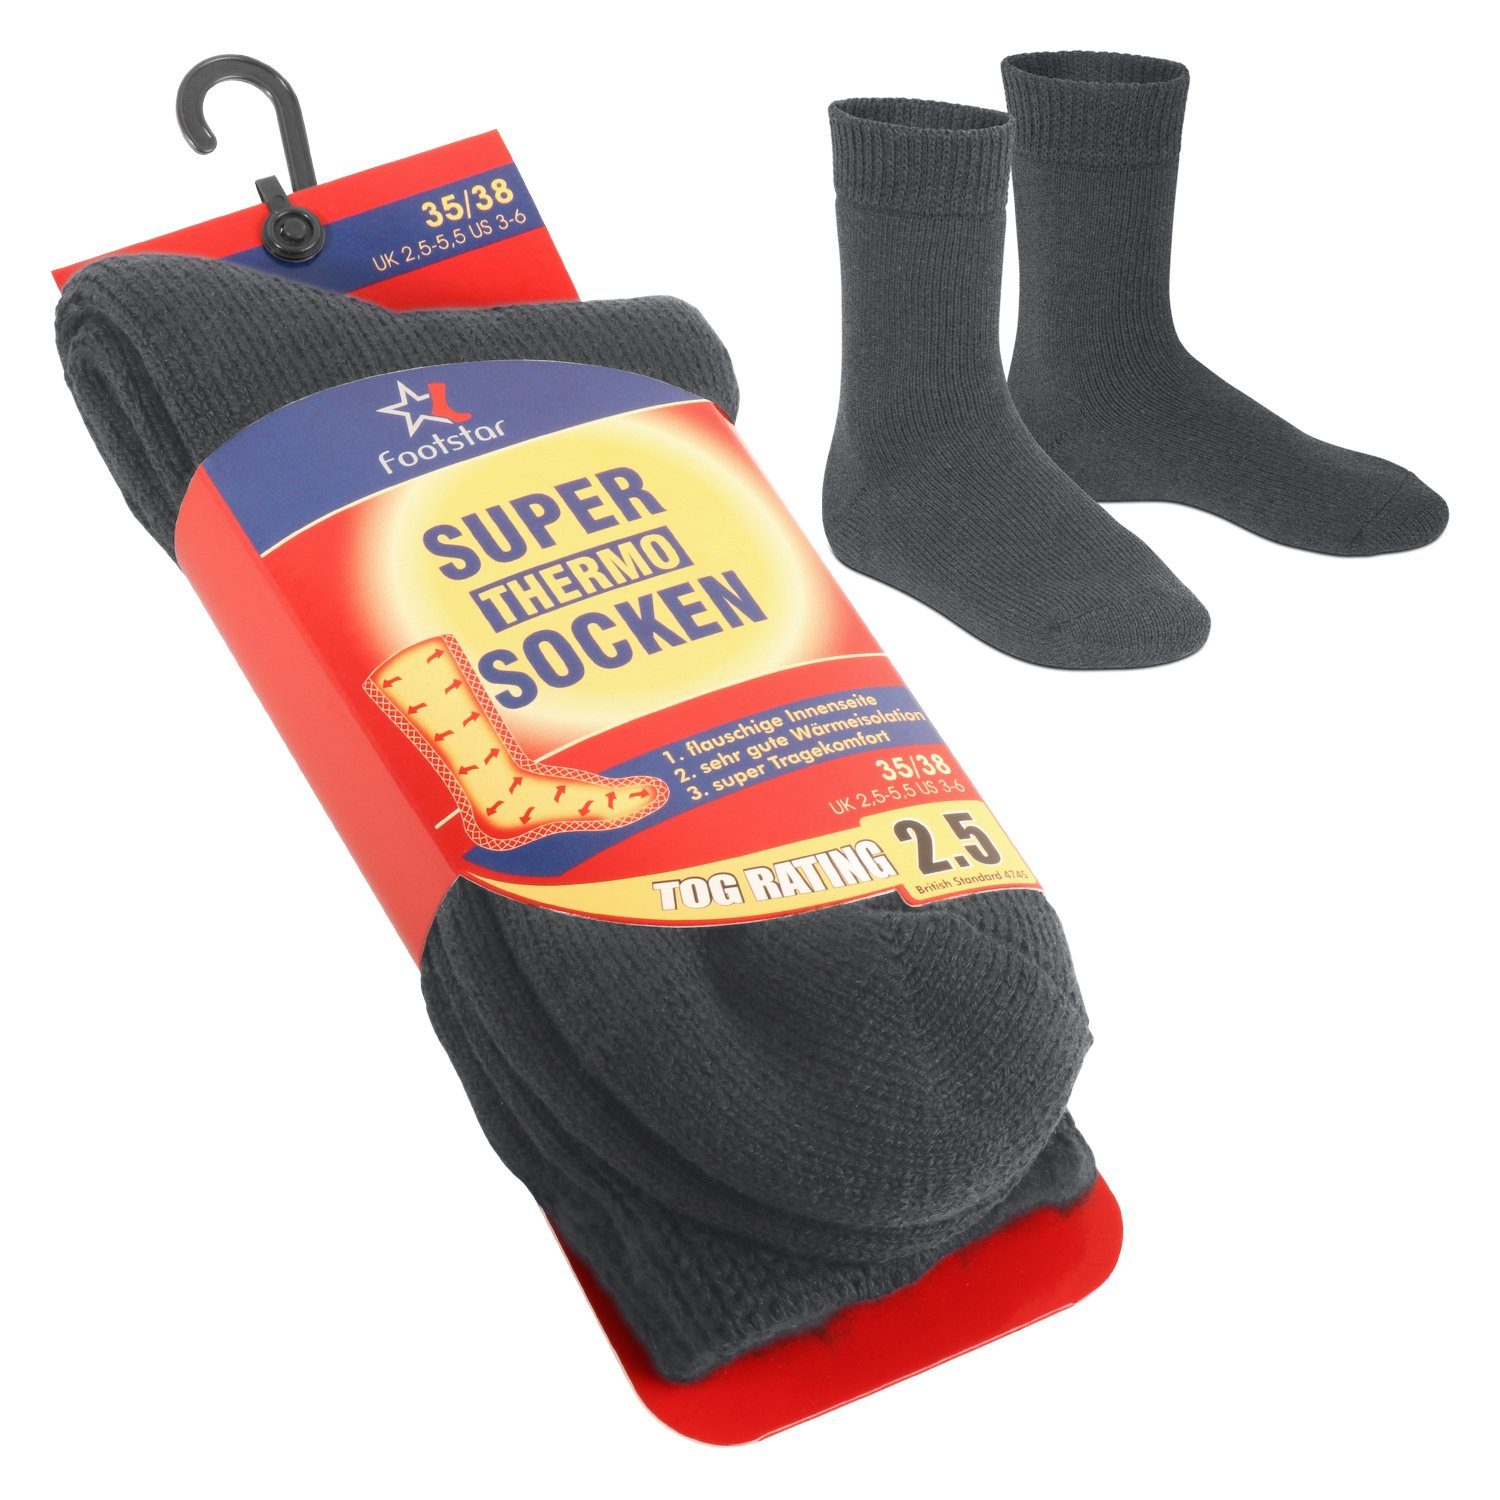 Footstar Thermosocken Damen & Herren Thermo Socken (1 Paar) extra warm Anthrazit